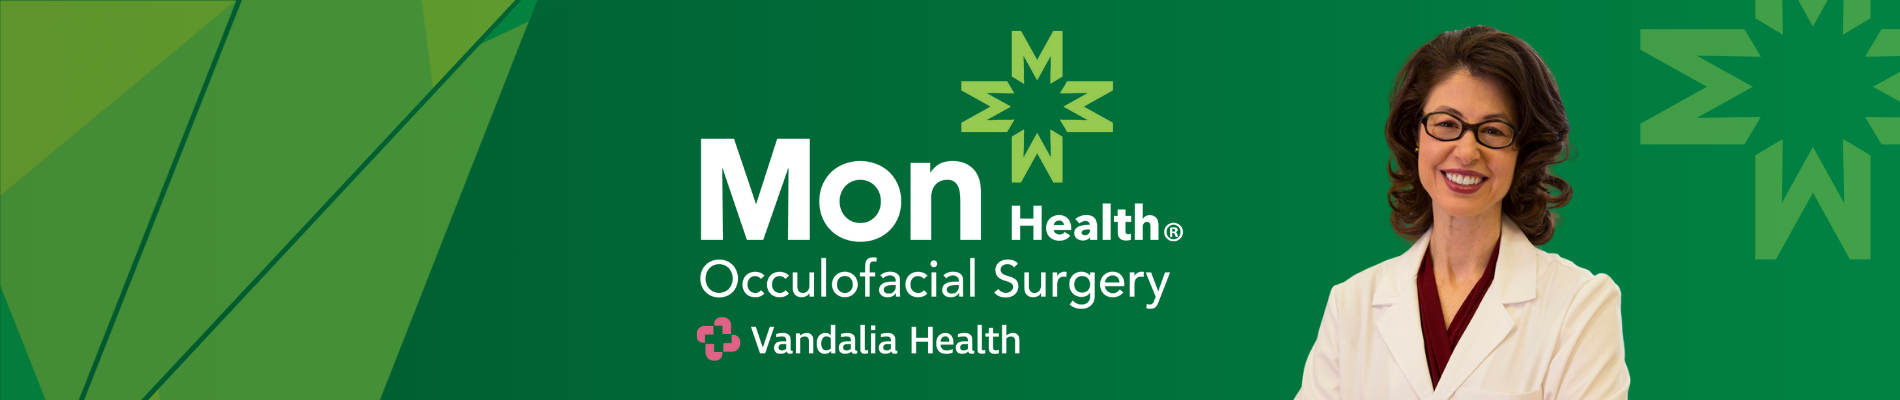 oculofacial surgery